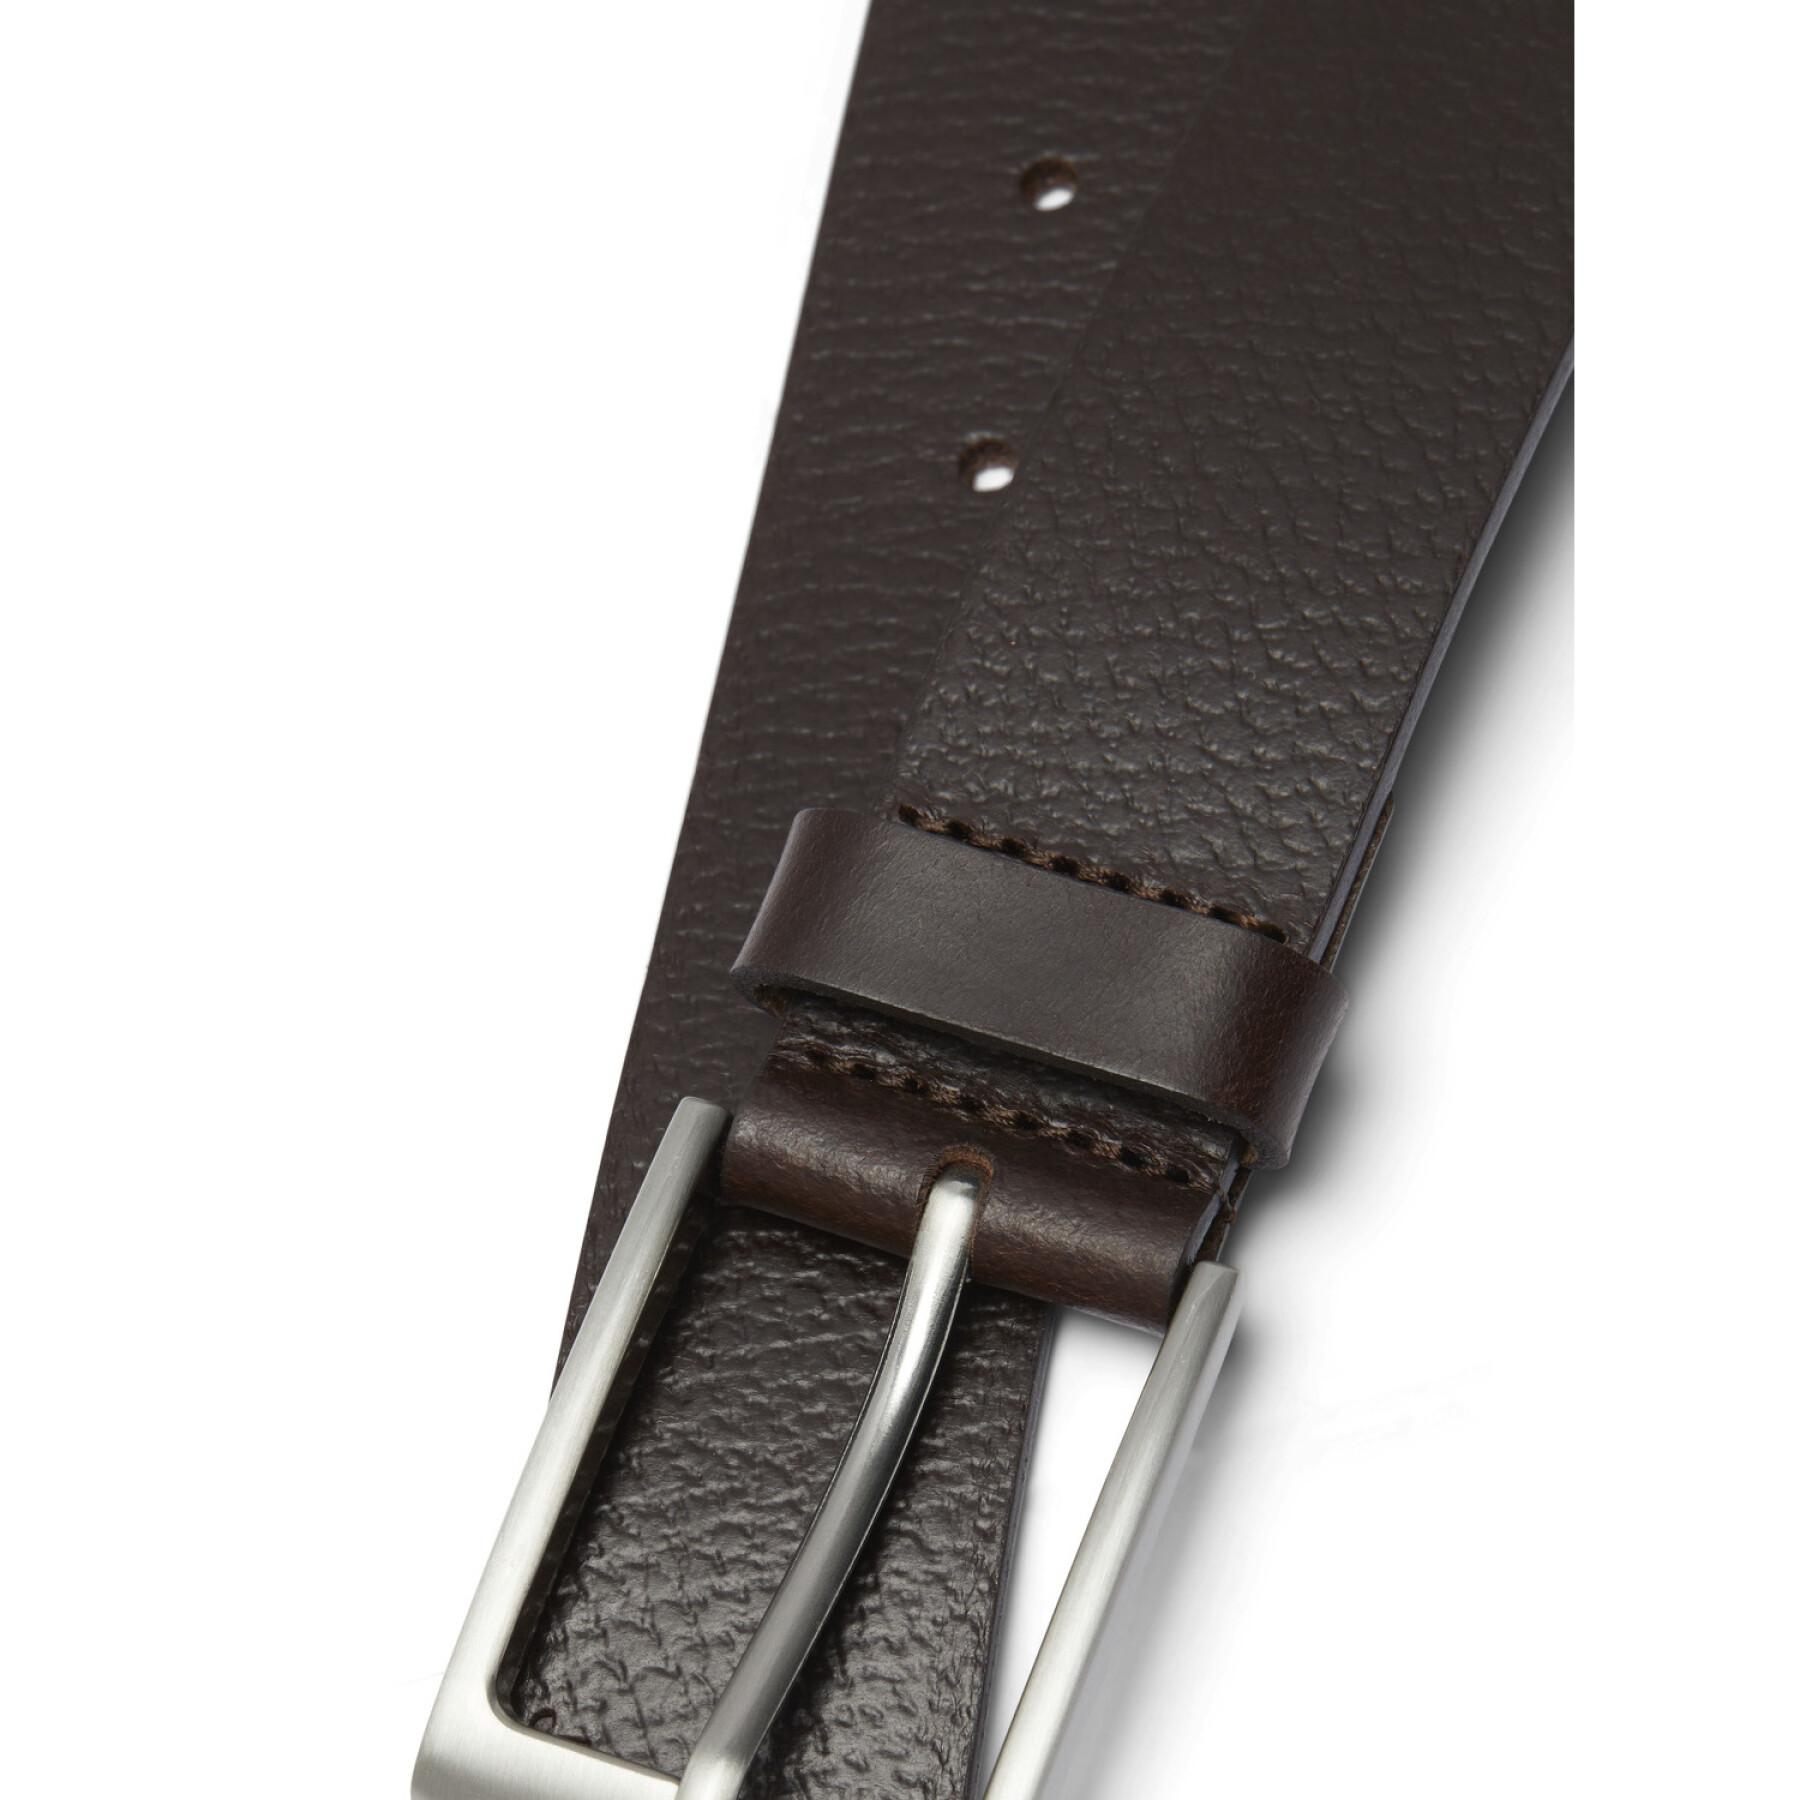 Leather belt Jack & Jones Stockholm